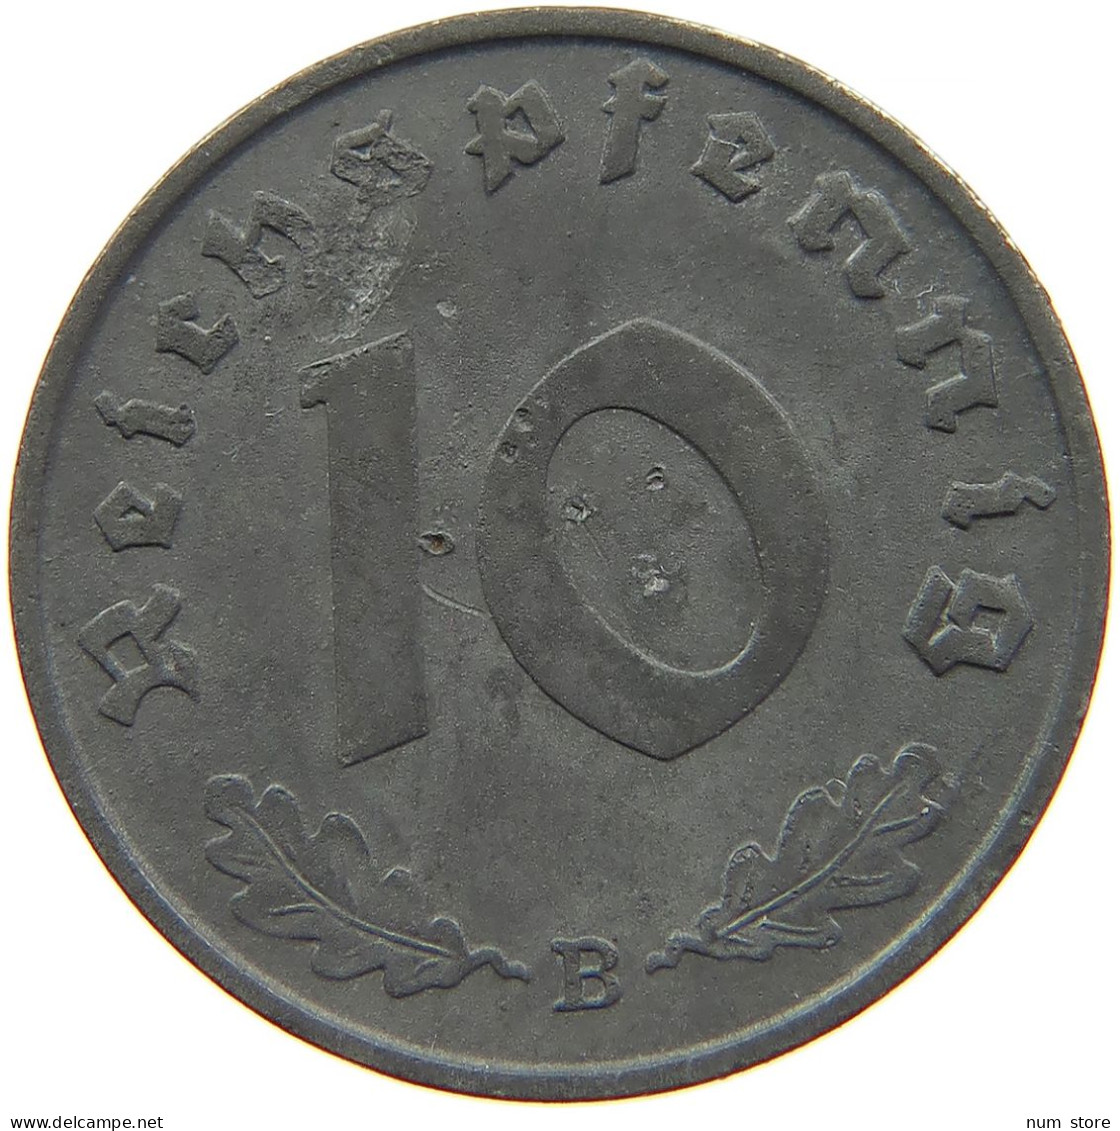 GERMANY 10 REICHSPFENNIG 1940 B #s095 0095 - 10 Reichspfennig